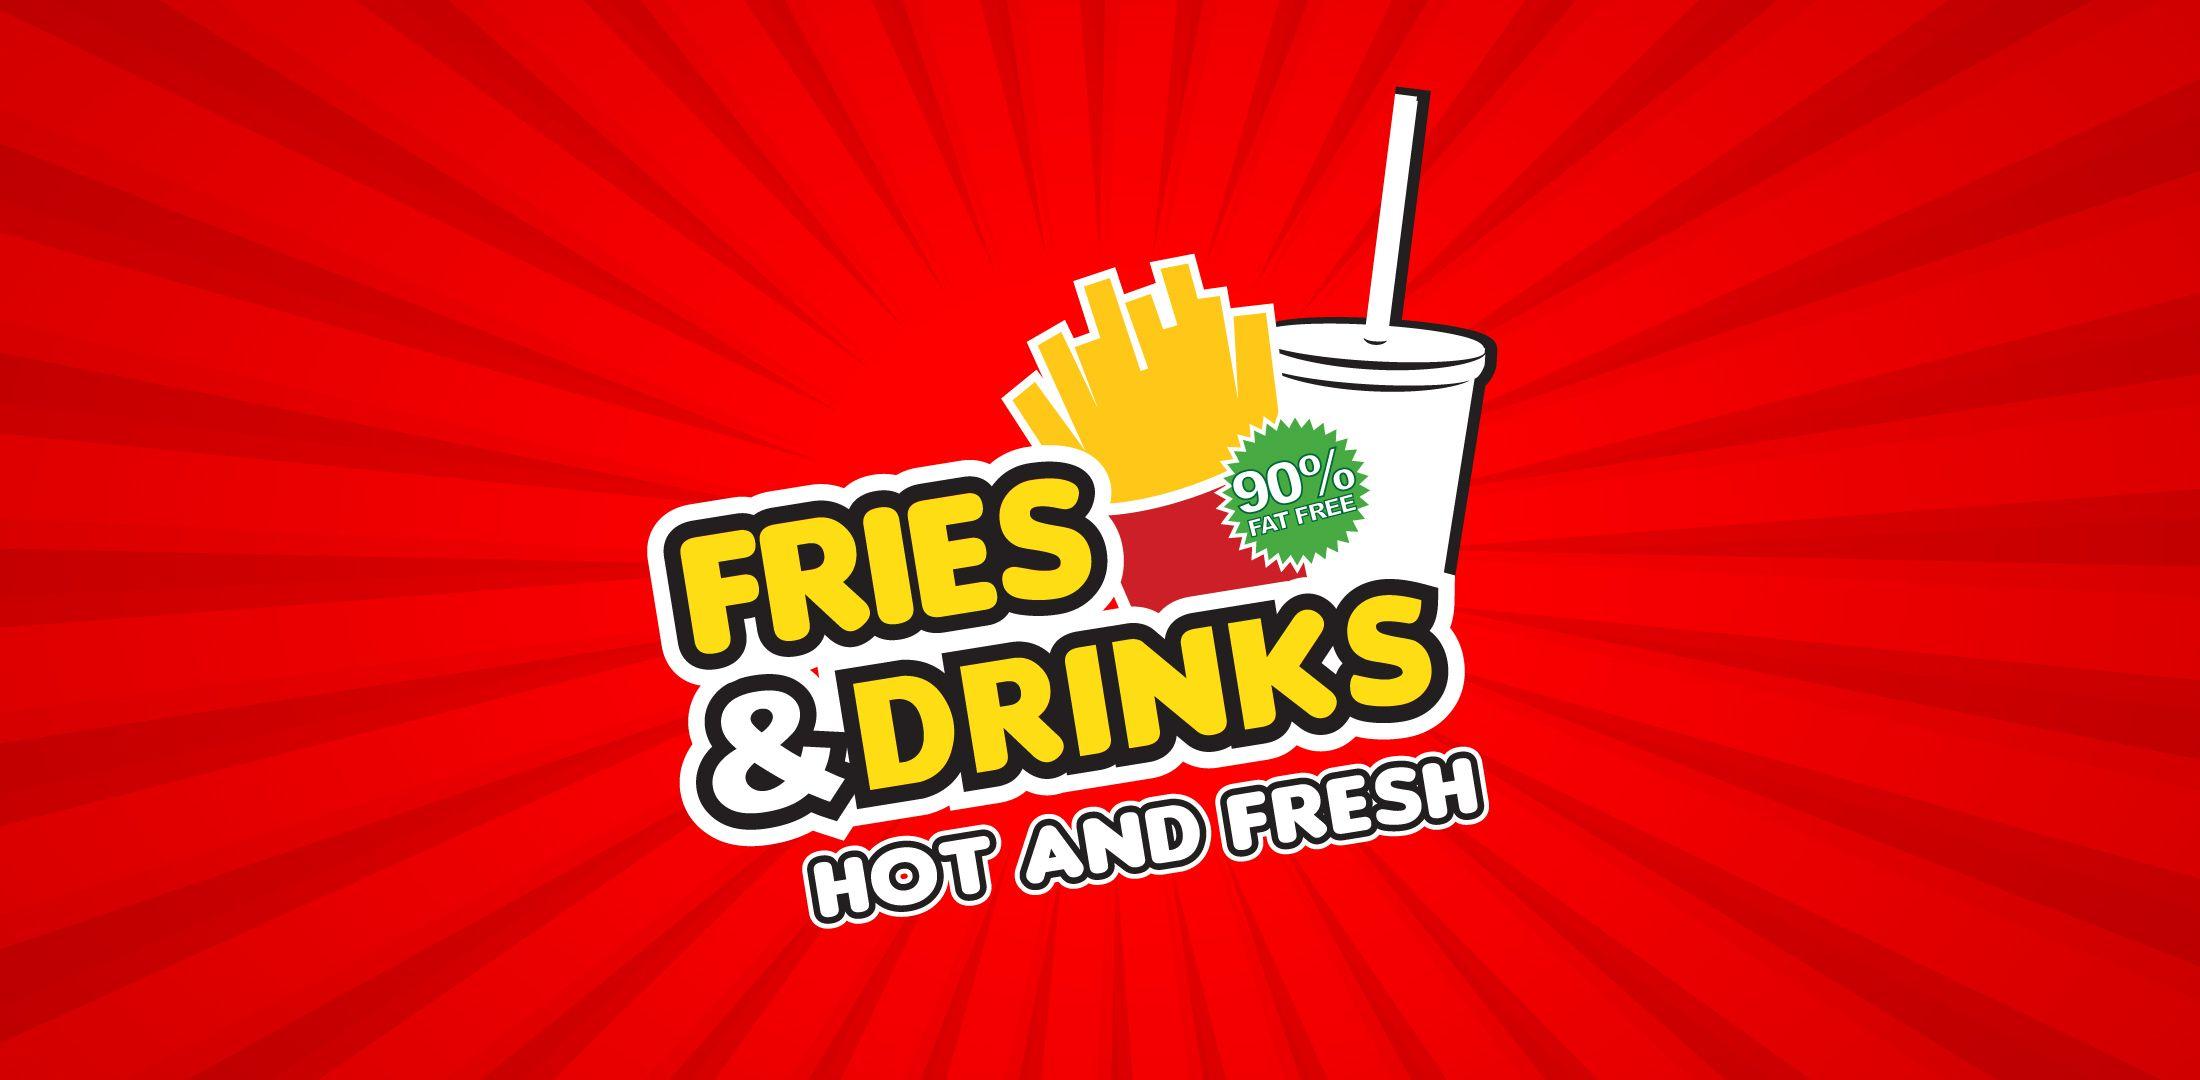 Fries Logo - ADCAKE™ | Fries and Drinks Logo on Logos & Branding